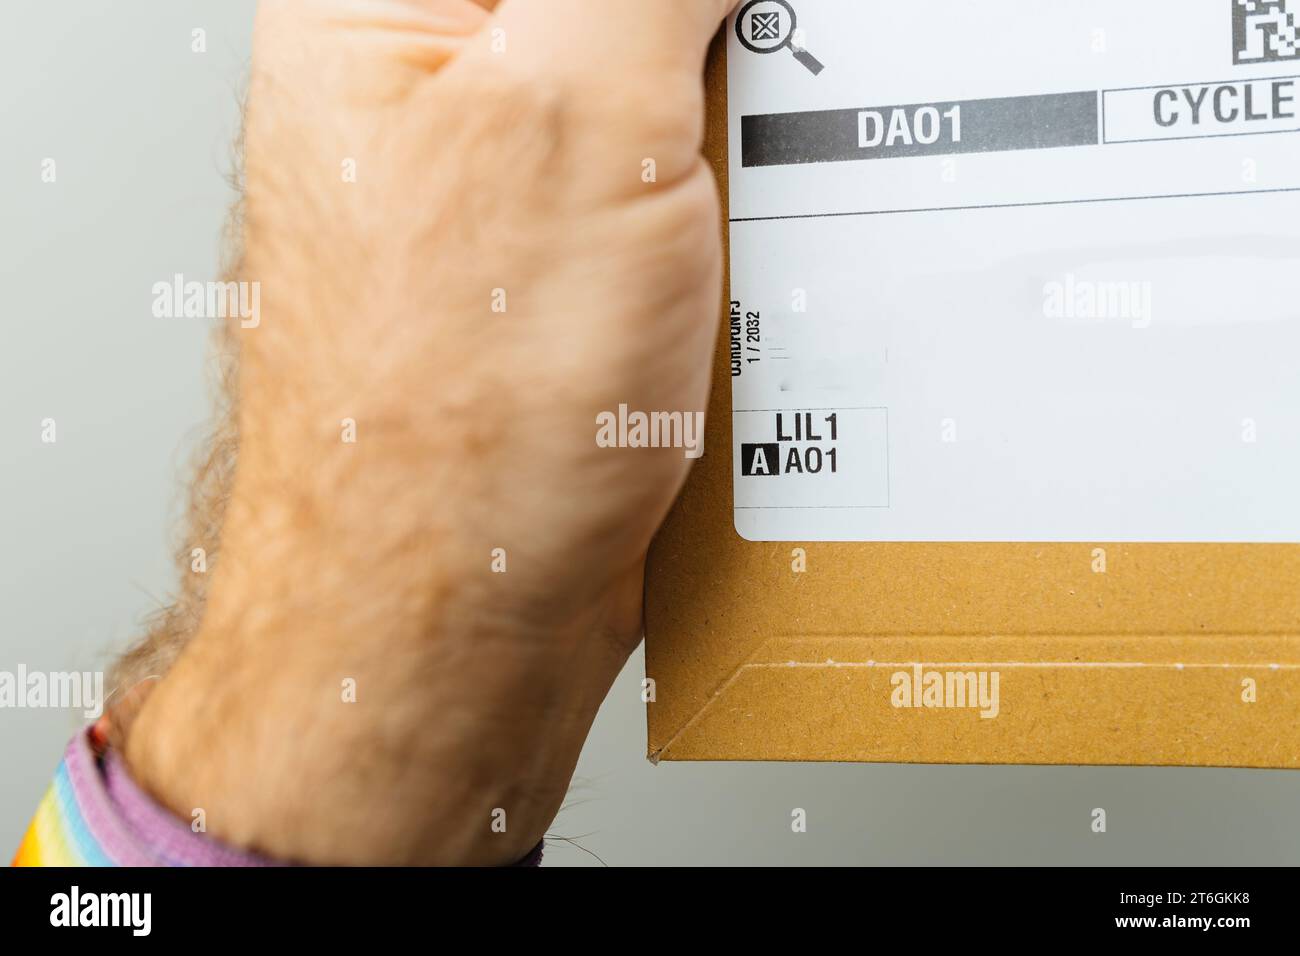 Paris, Frankreich - 25. Oktober 2023: Ein männlicher Fahrer greift eine Amazon Prime Kartonverpackung, die mit LIL1 gekennzeichnet ist, was den Ursprung der Logistikplattform Lauwin-Planque angibt Stockfoto